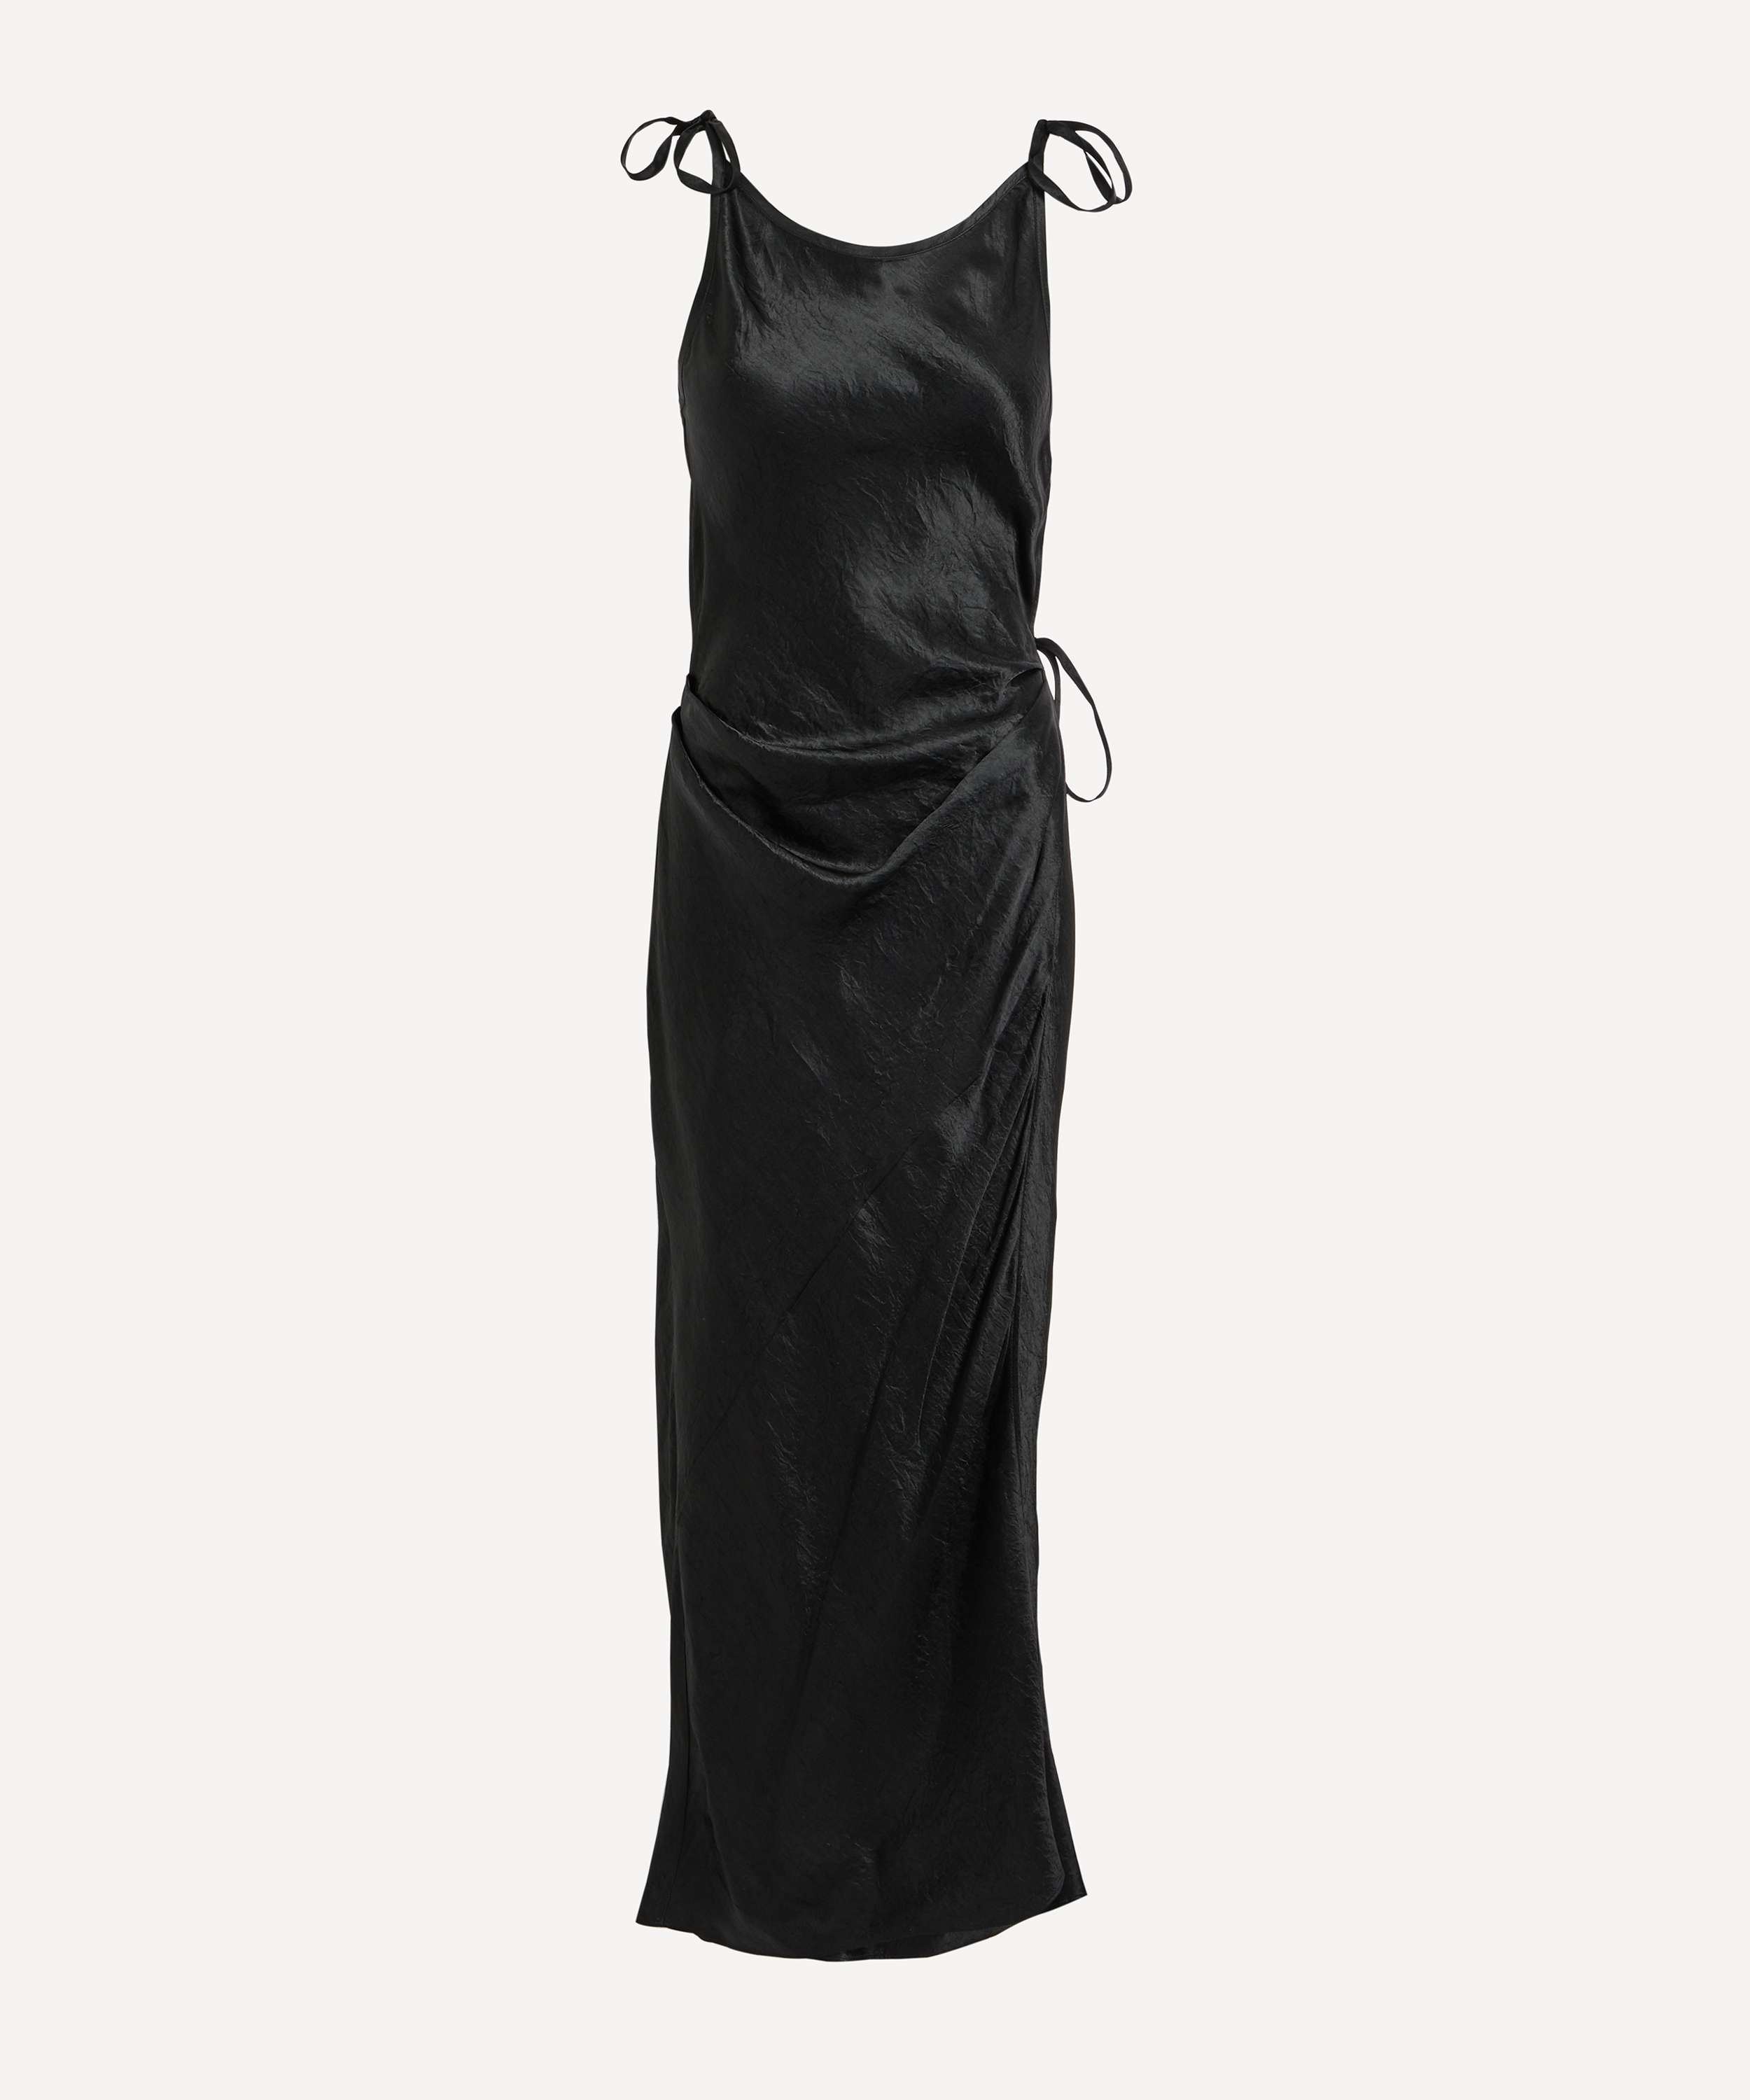 emma stone looks stunning in grey velvet cowl neck dress as she